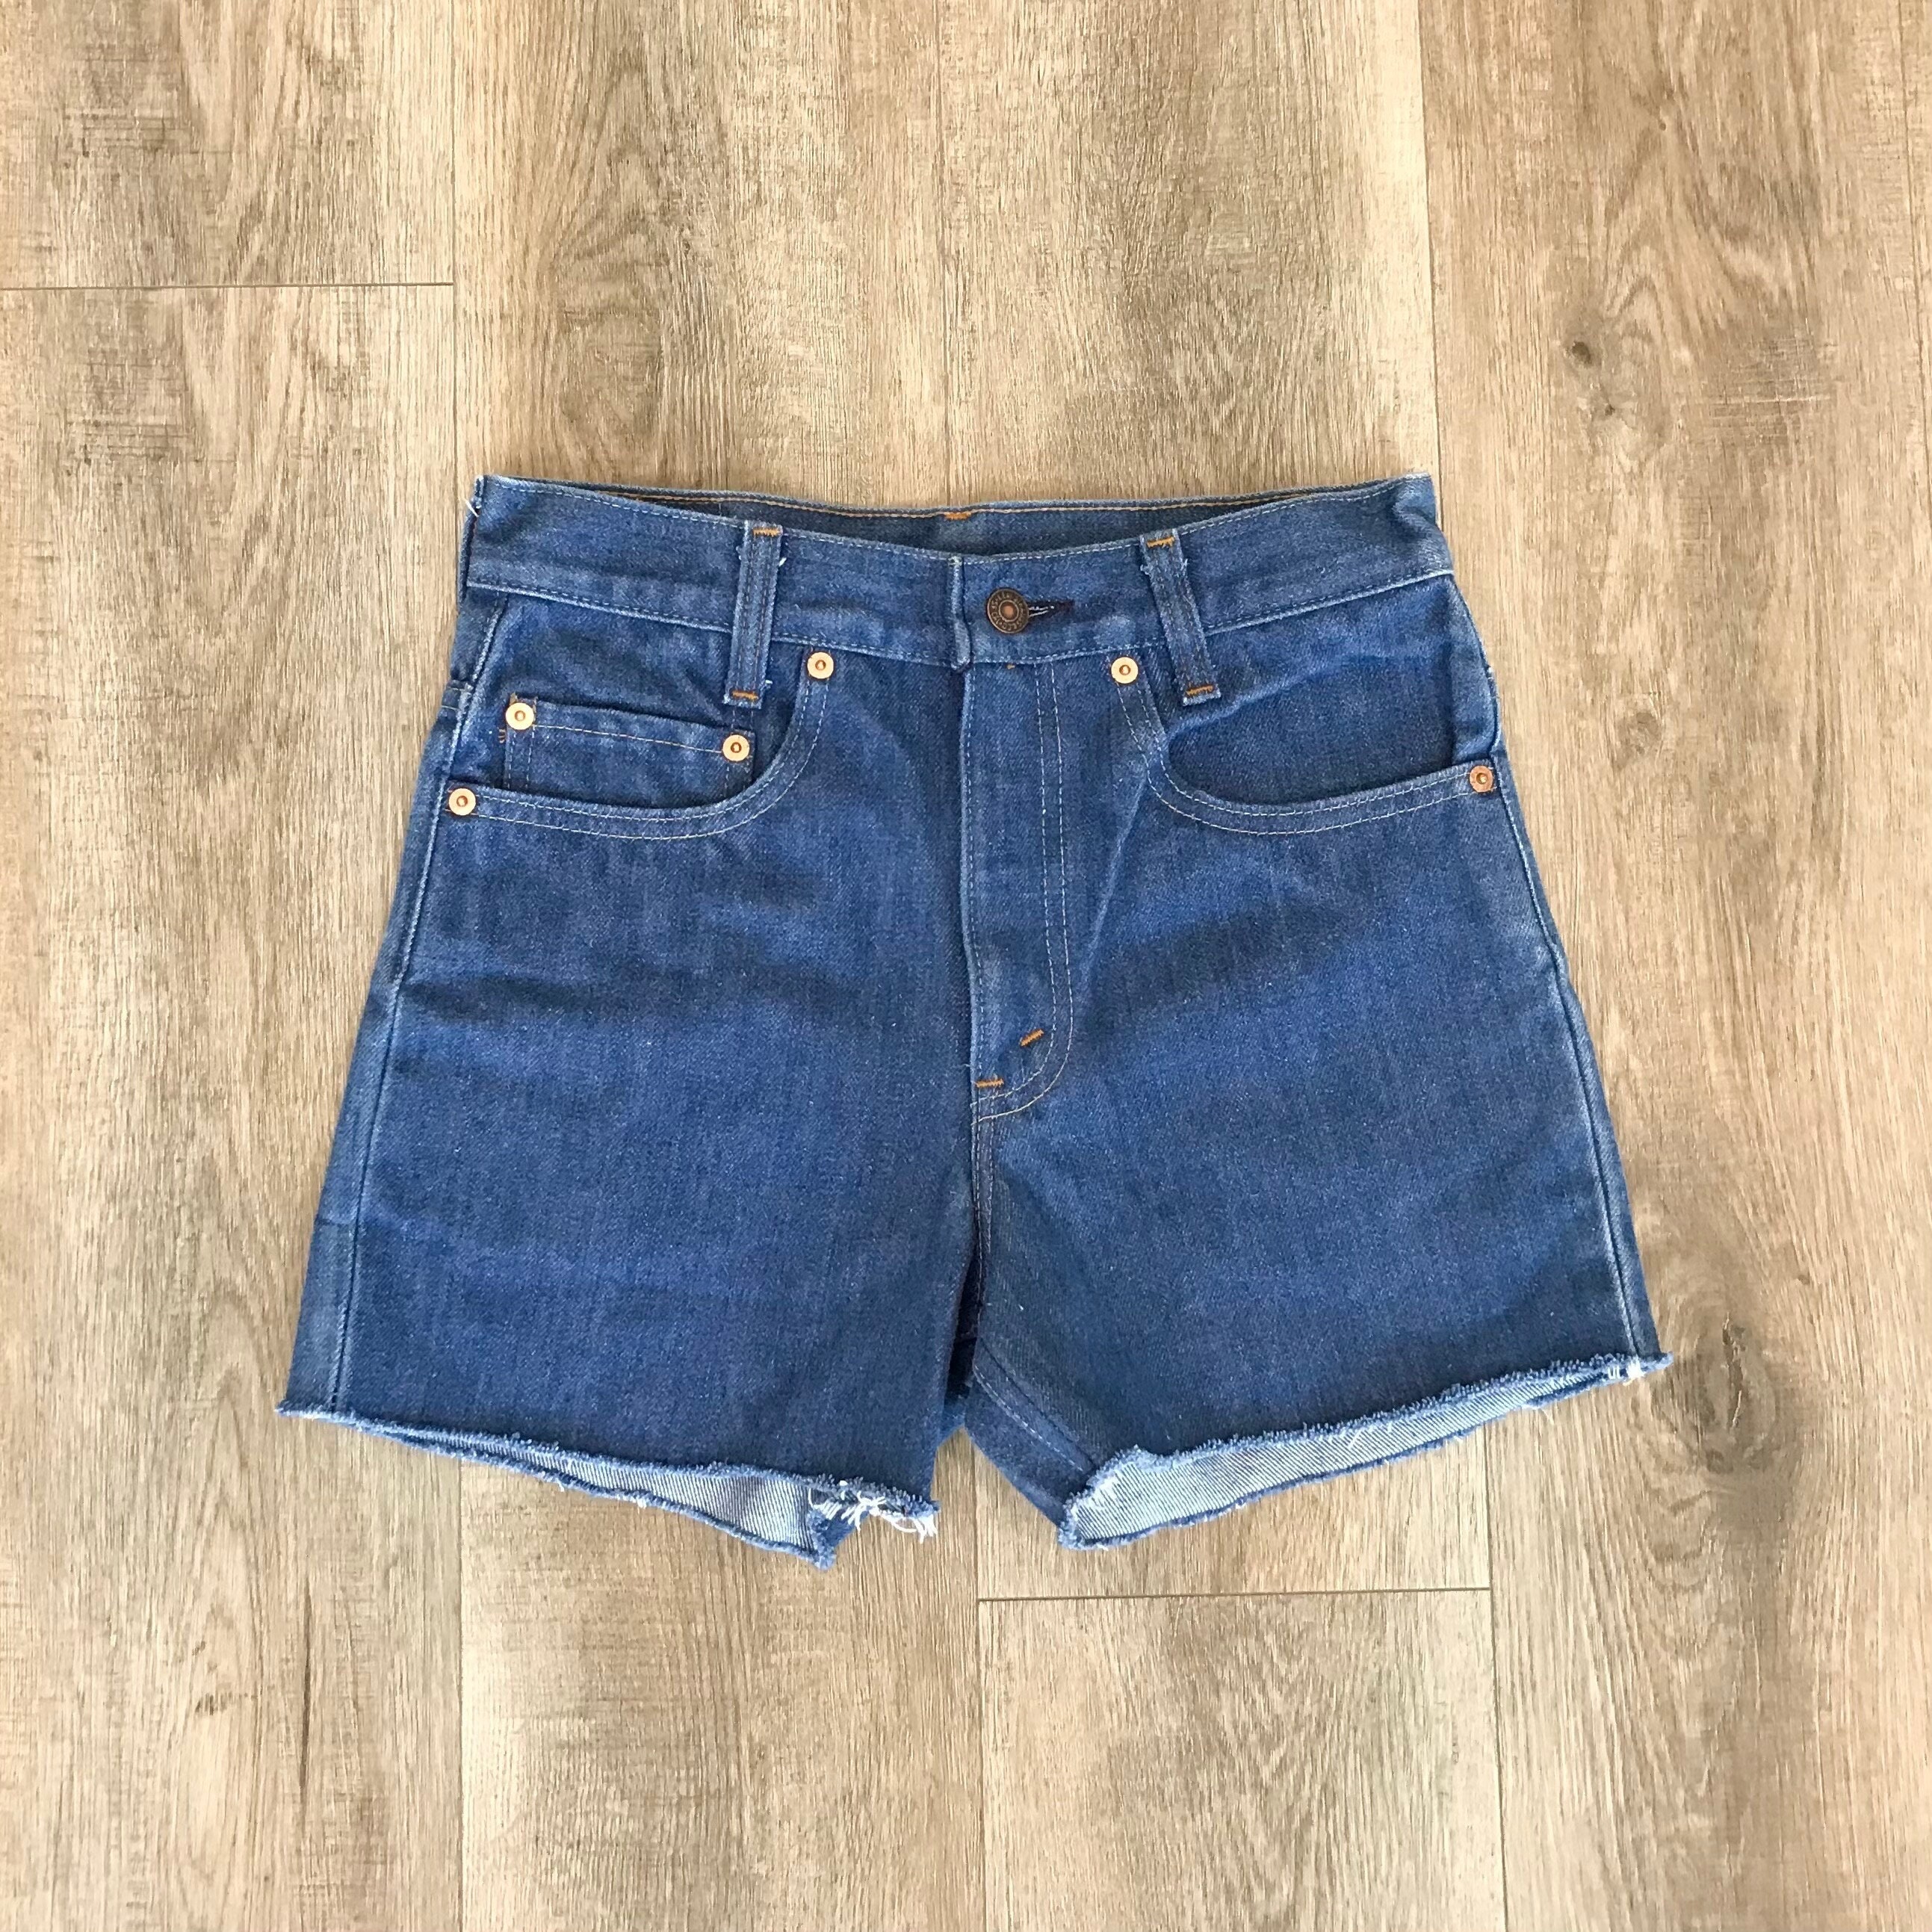 Levi's Vintage Cut Off Jean Shorts / Size 24 